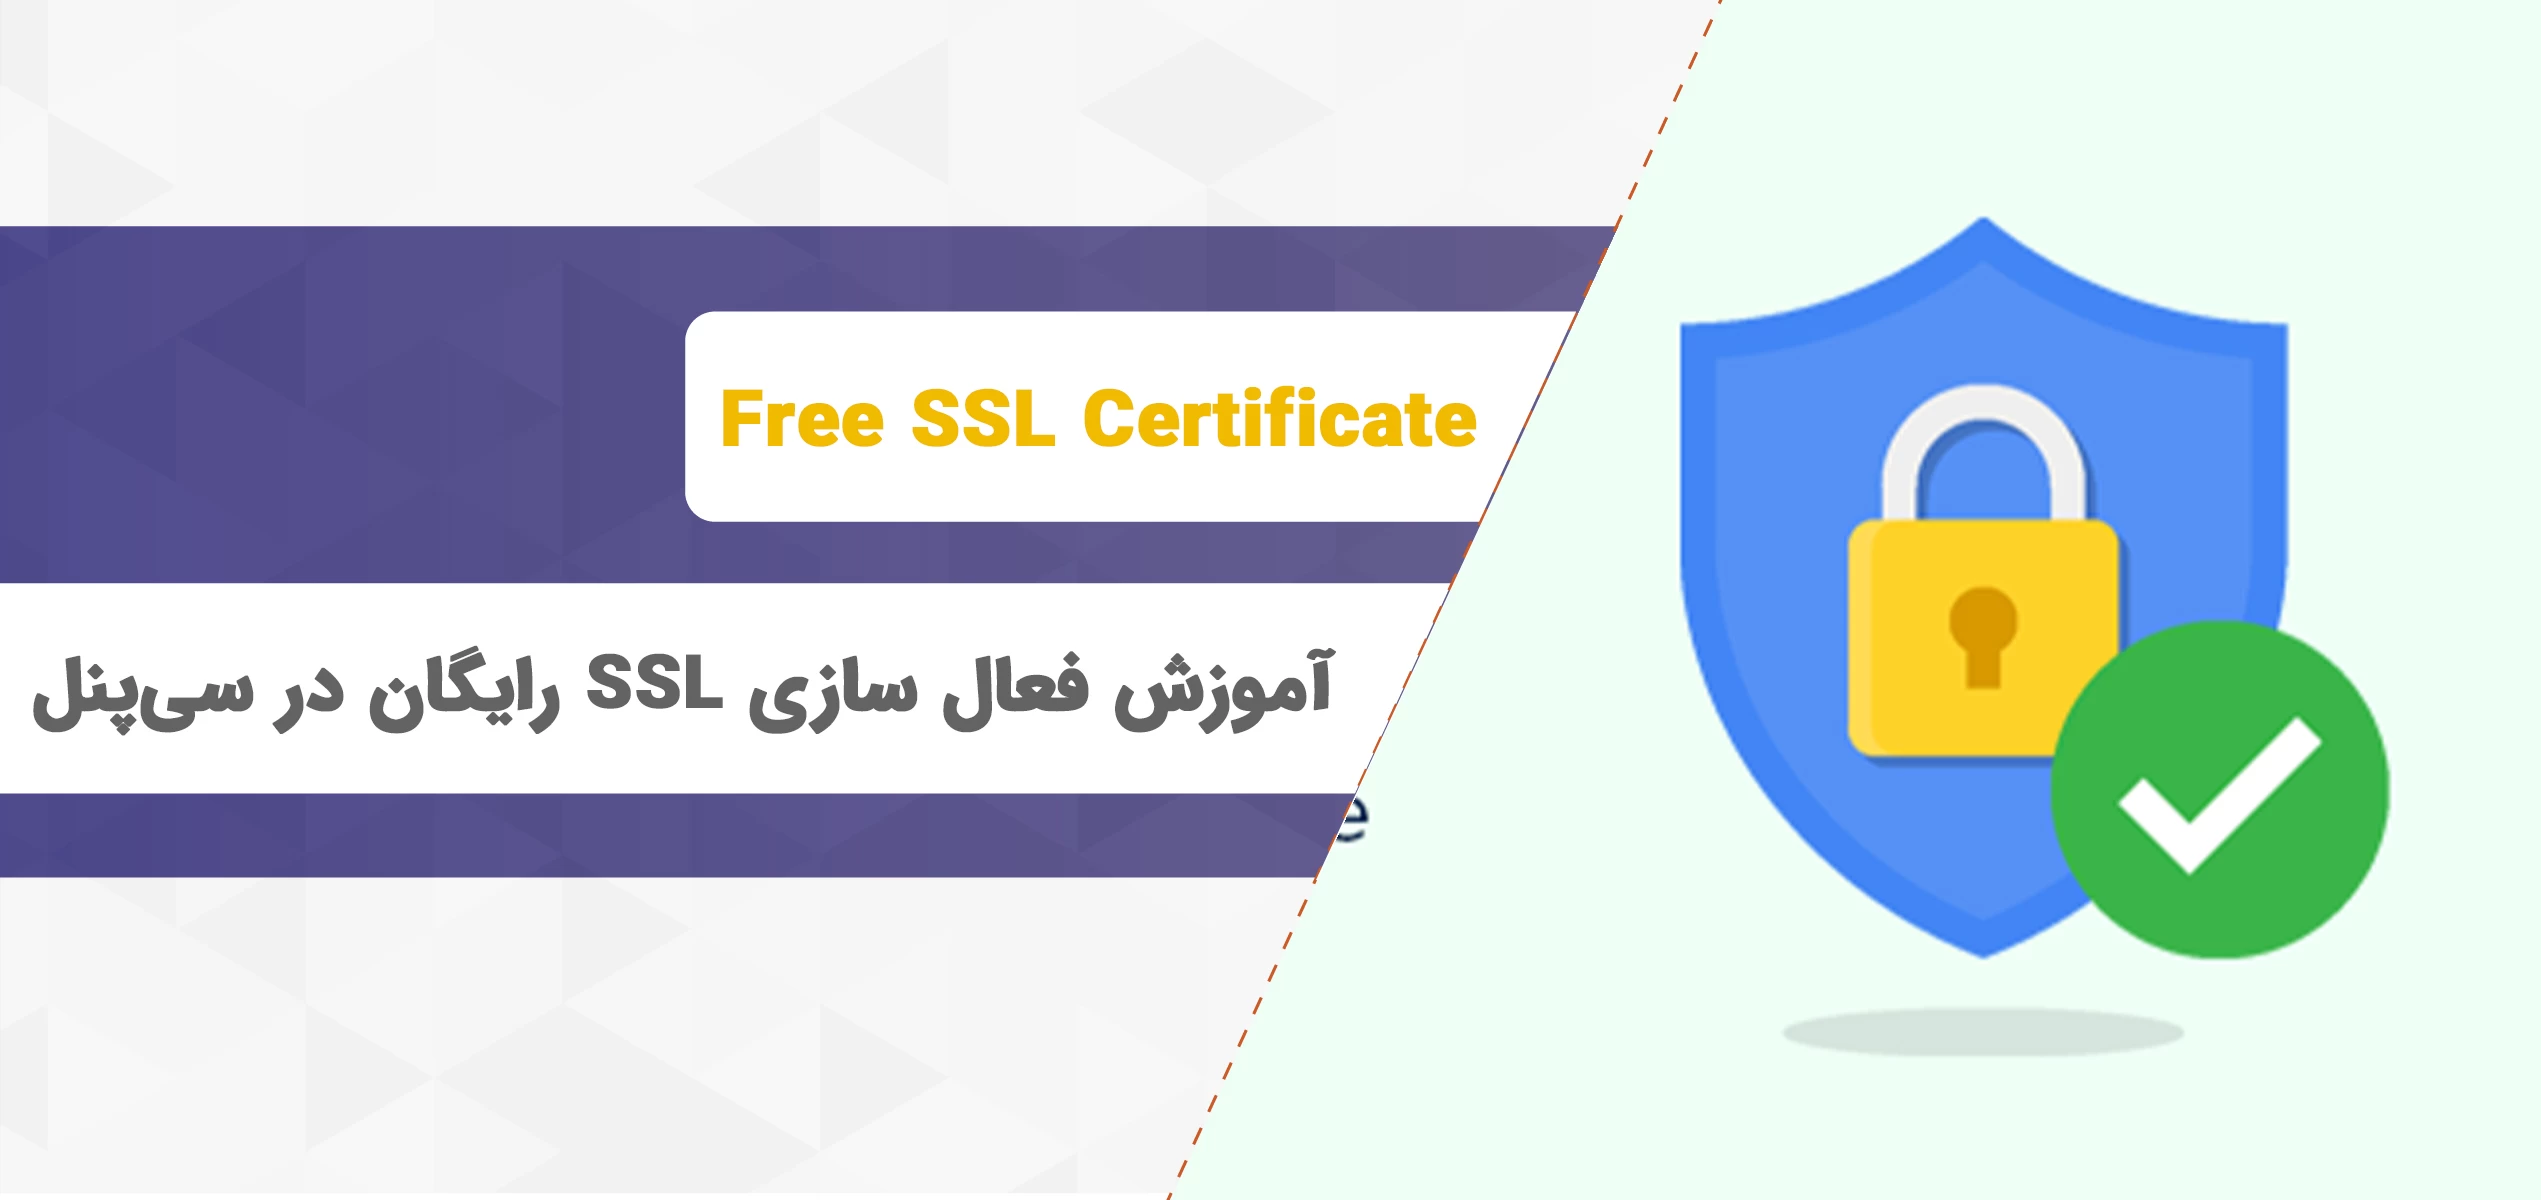 فعال سازی SSL رایگان در سی پنل و غیر فعال سازی آن